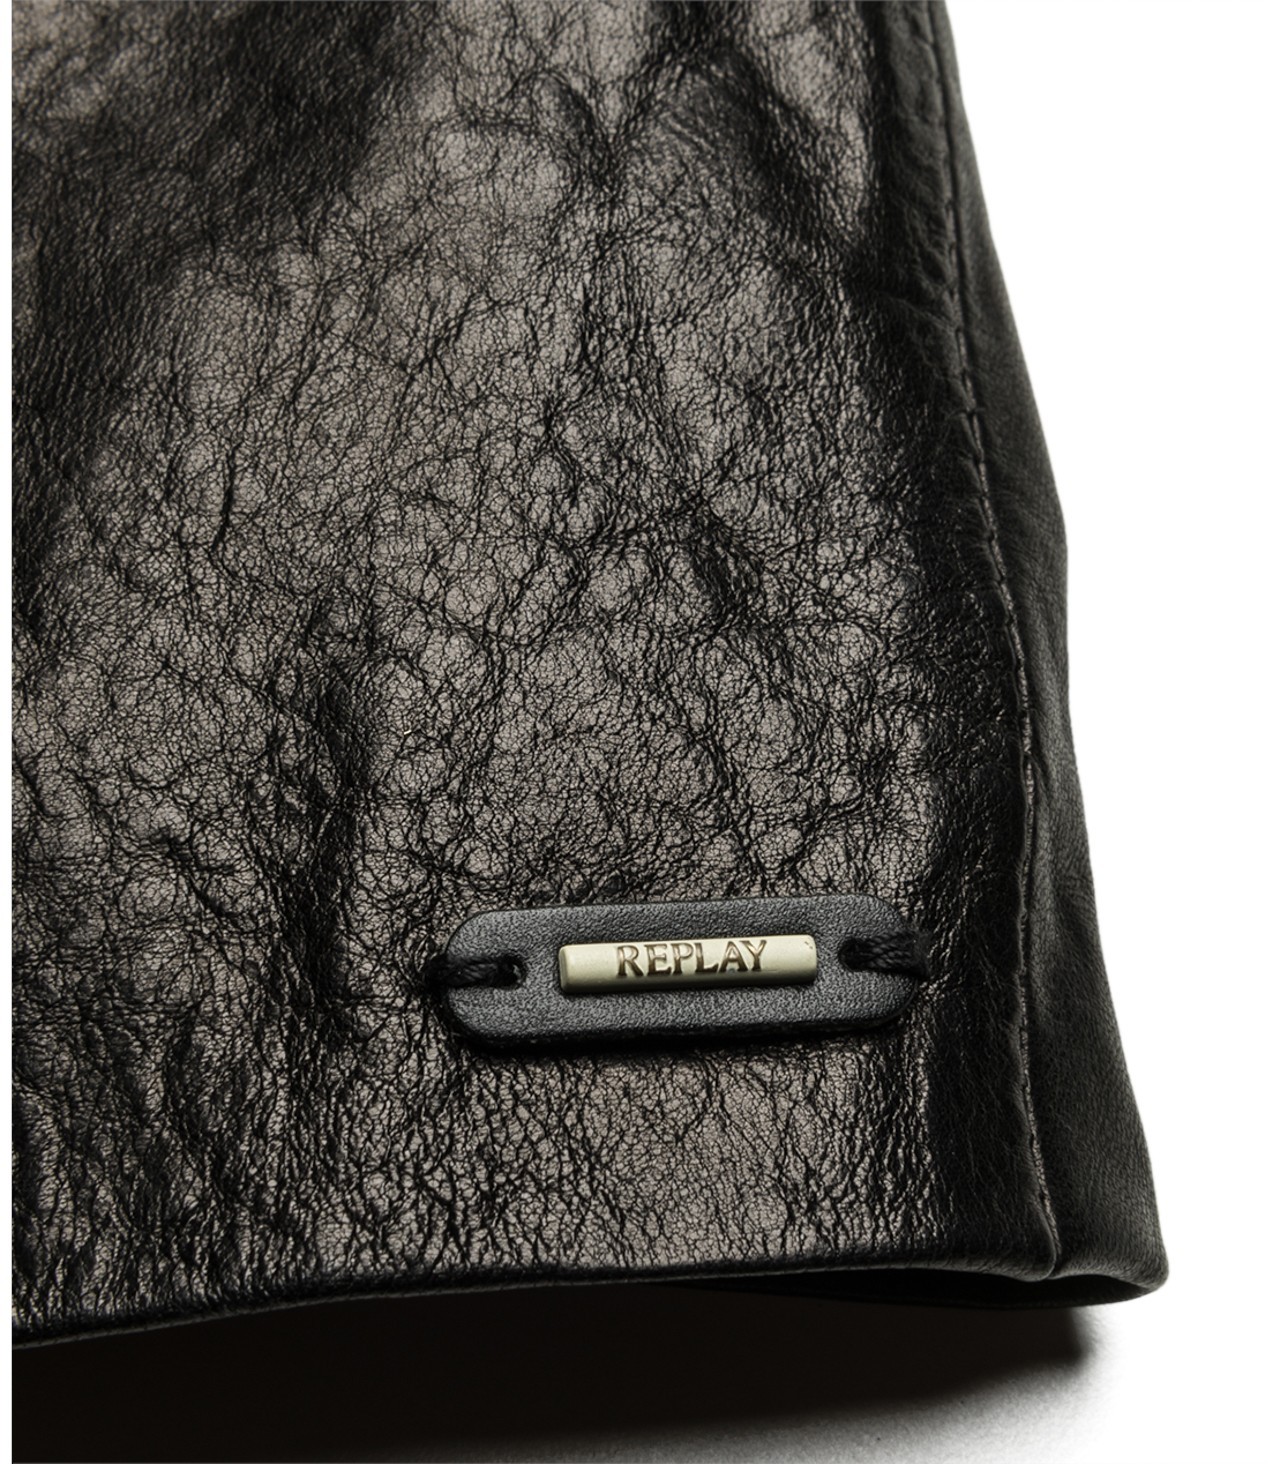 Replay stílusos női fekete gombos bőrkabát 2015.02.28 #79132 fotója